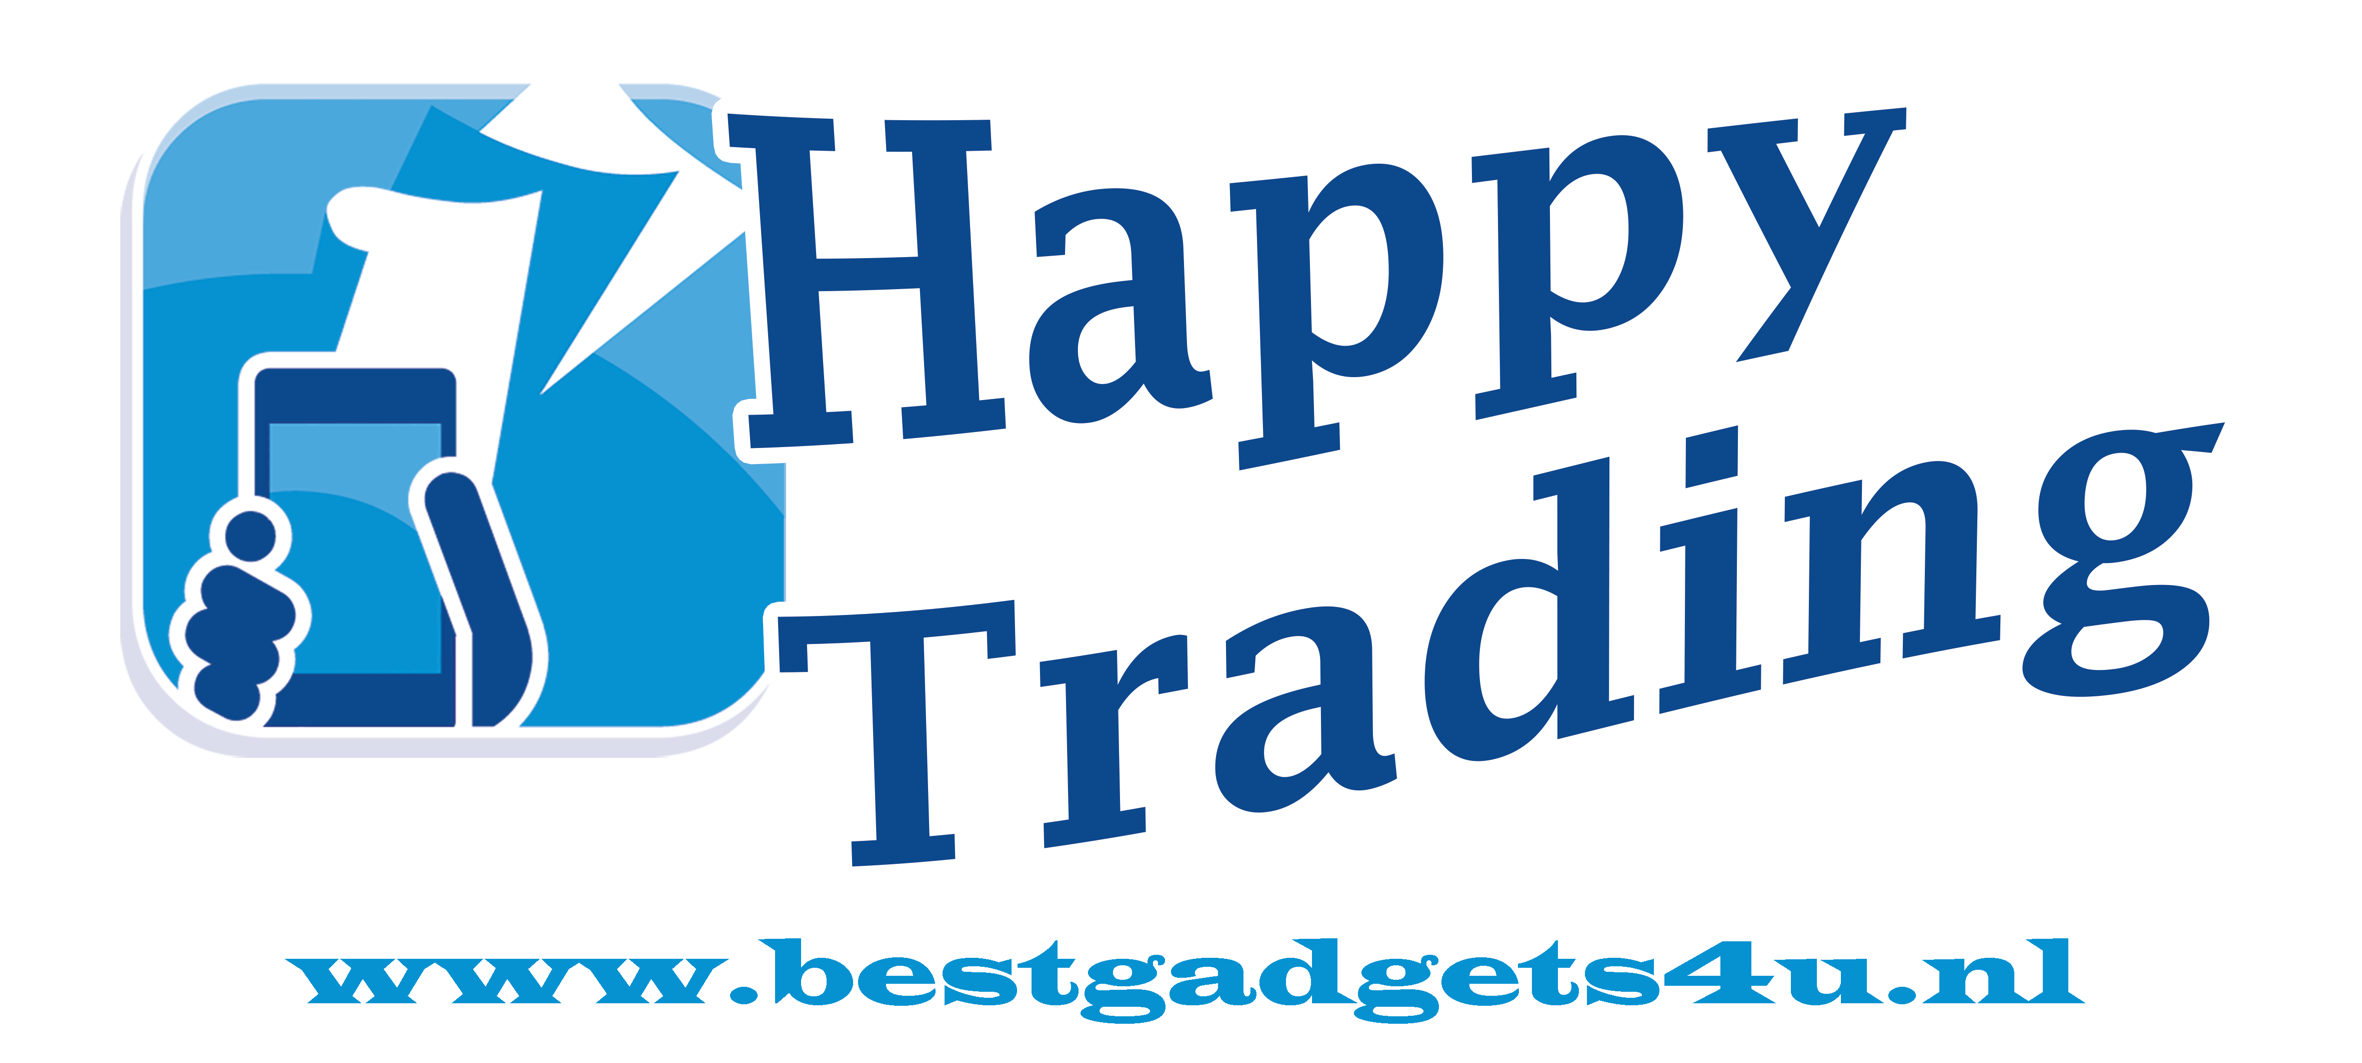 Happy Trading